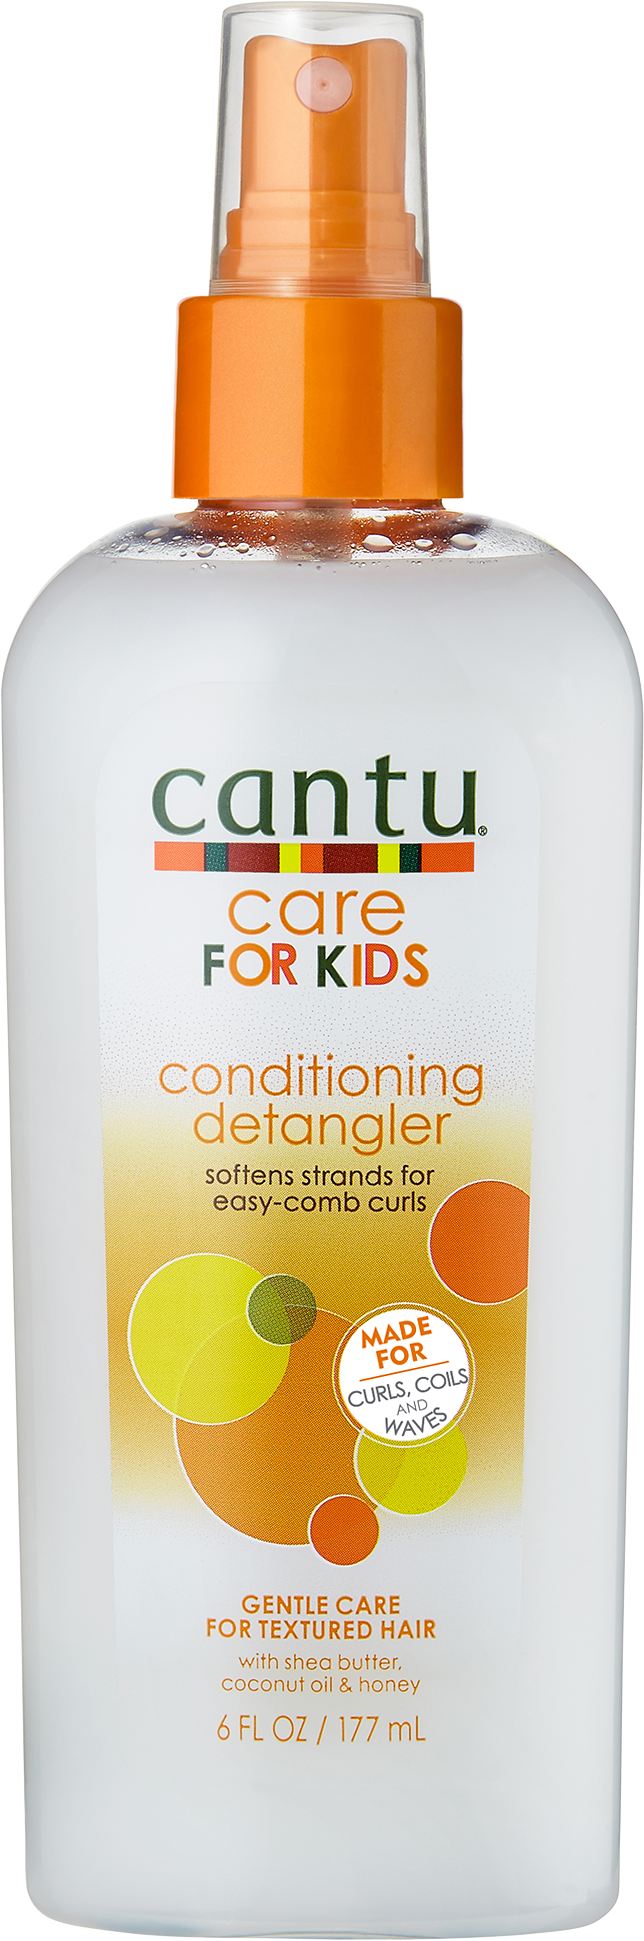 Care for Kids Conditioning Detangler